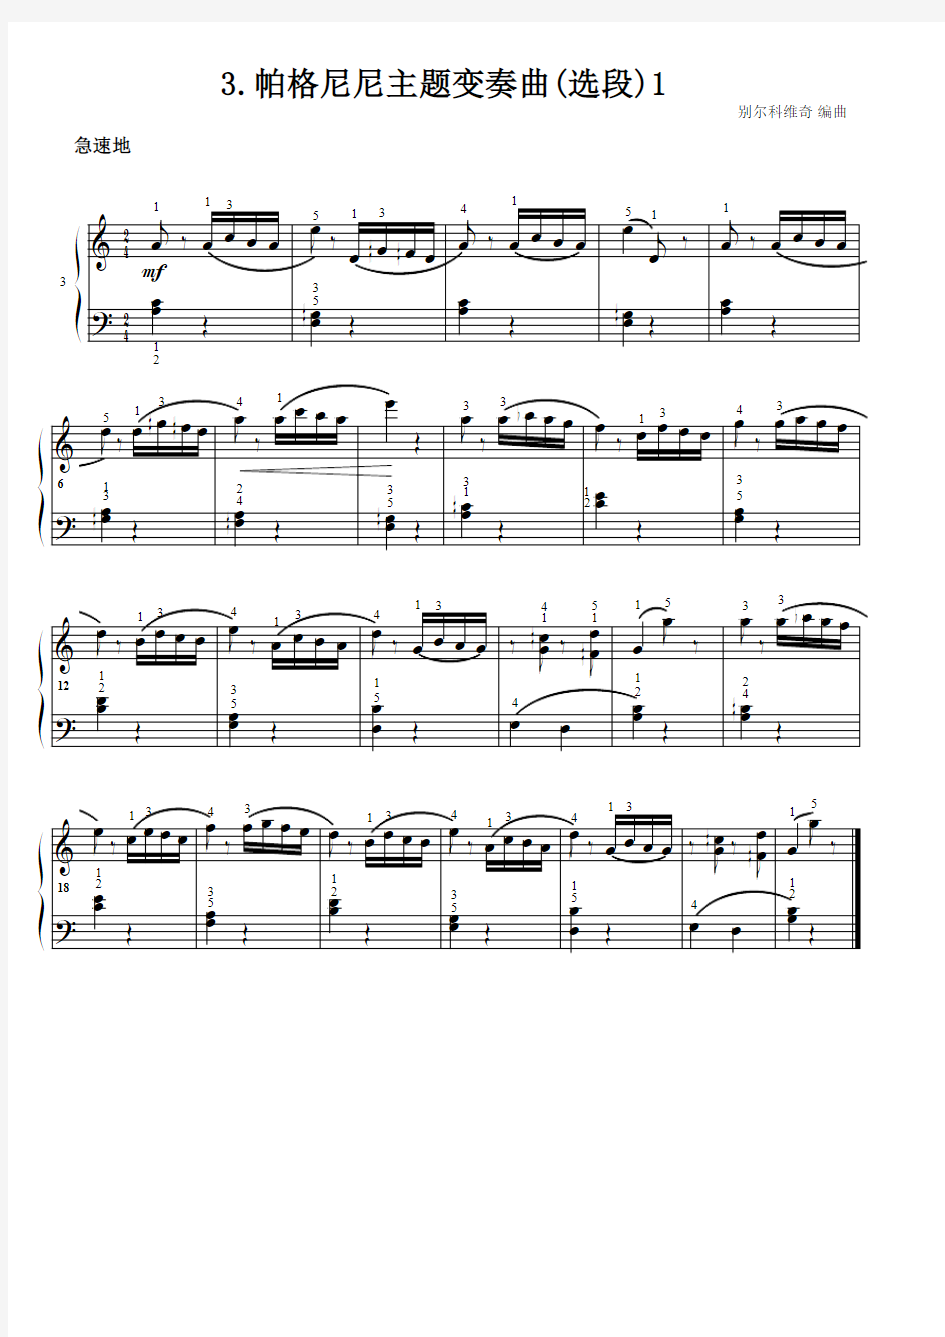 帕格尼尼主题变奏曲(选段)1 别尔科维奇 原版 五线谱 钢琴谱 正谱  乐谱